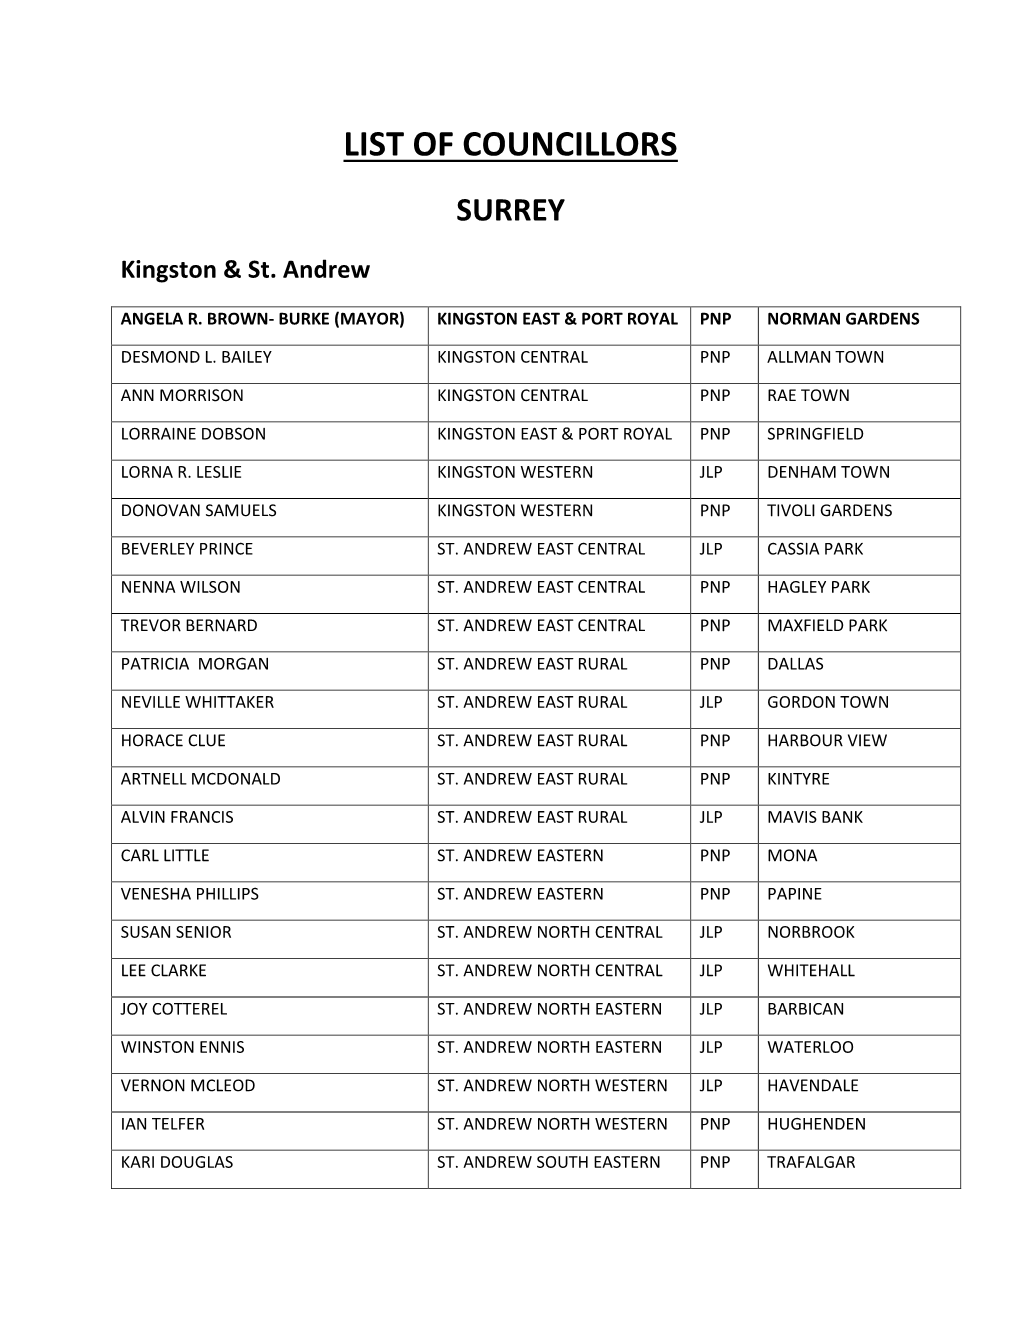 List of Councillors Surrey